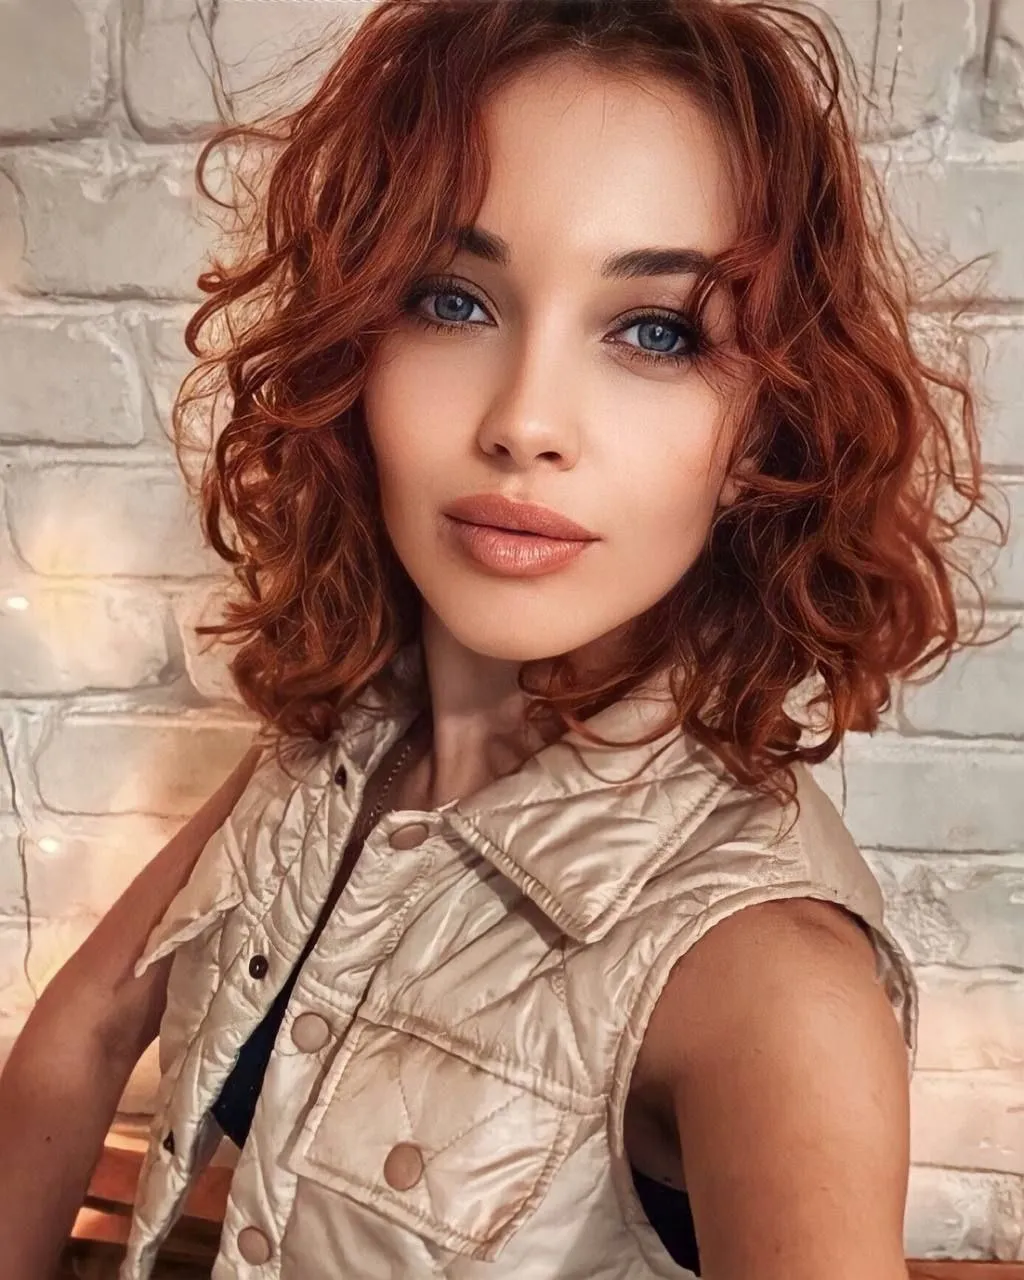 Mariya russian singles photos